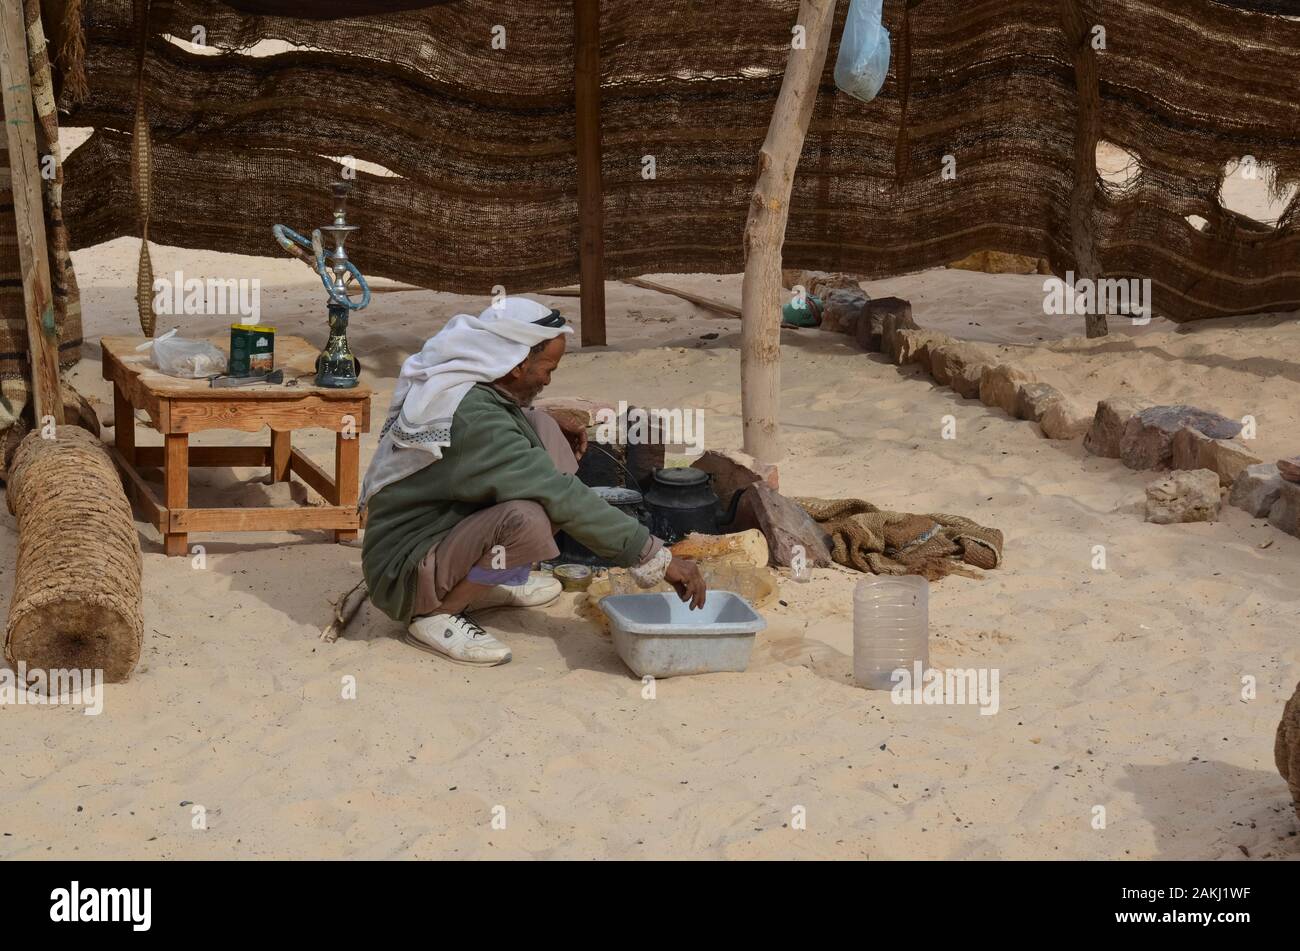 Eastern Desert, Egypt - January 24, 2013: Eastern Desert, Egypt - January 24, 2013: Bedouin man preparing food in the desert of Egypt Stock Photo